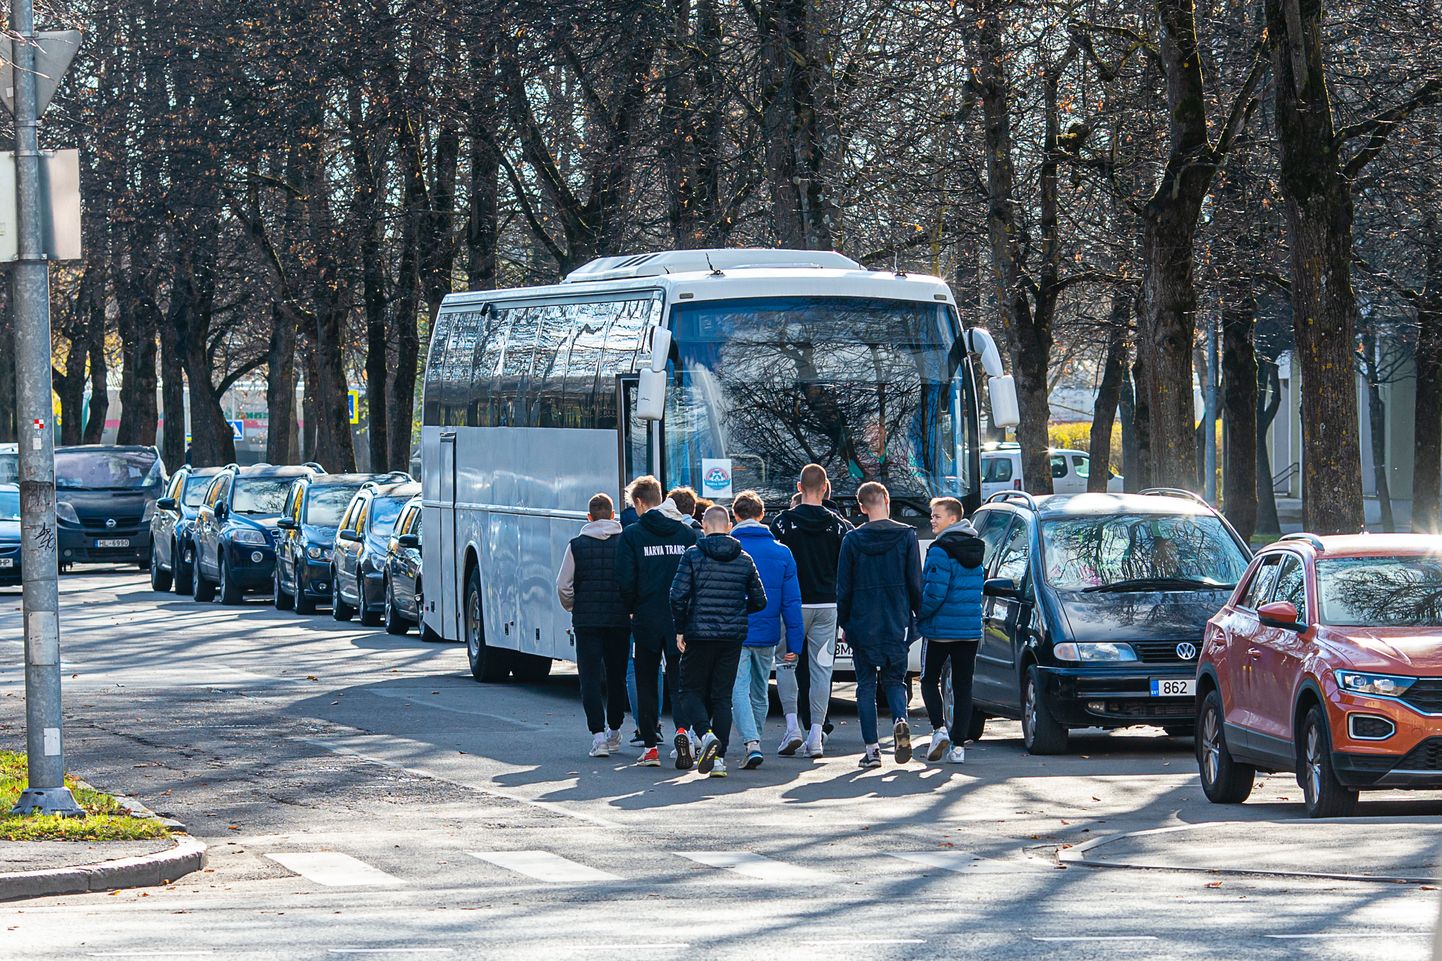 Eelhääletamine Narvas. Osa valijaid, nagu näiteks Narva Transi jalgpallimeeskond, toodi jaoskonda suisa bussiga. Kuid otseselt see keelatud pole ning rikkumise alla seega ei kuulu.